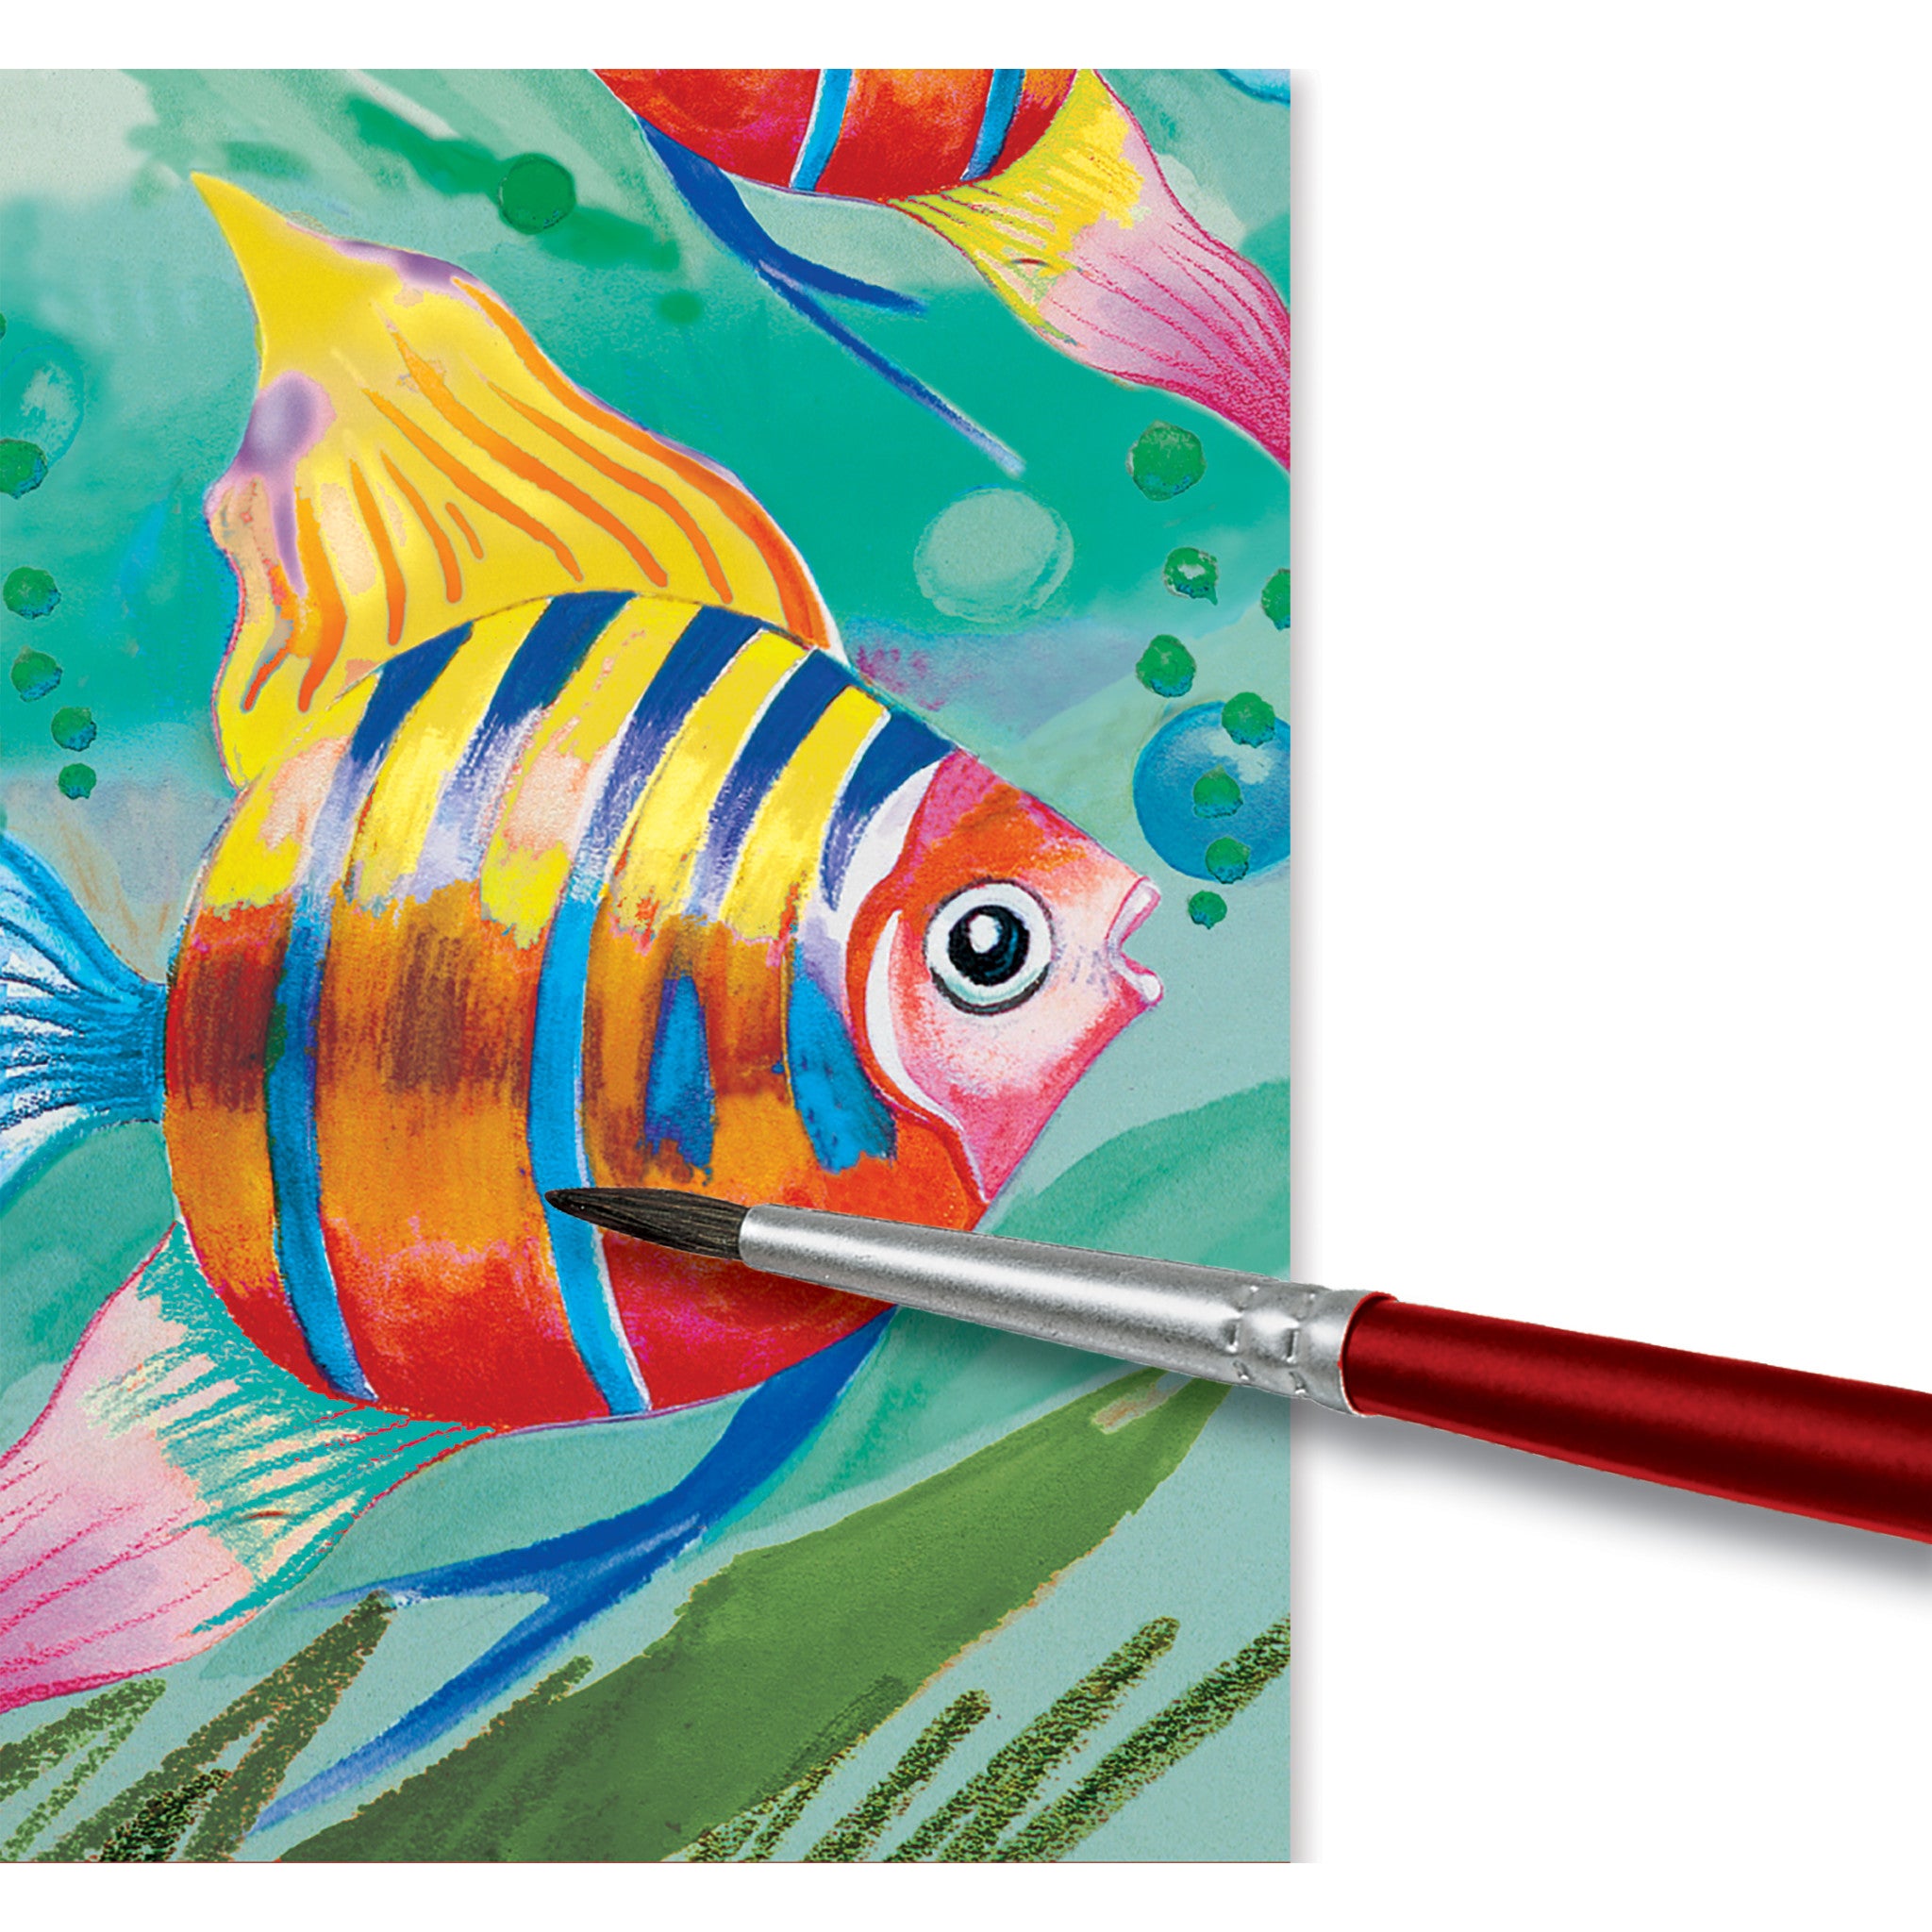 Faber-Castell Water Color Pencils Paint Brush 12 &Erasable Crayon